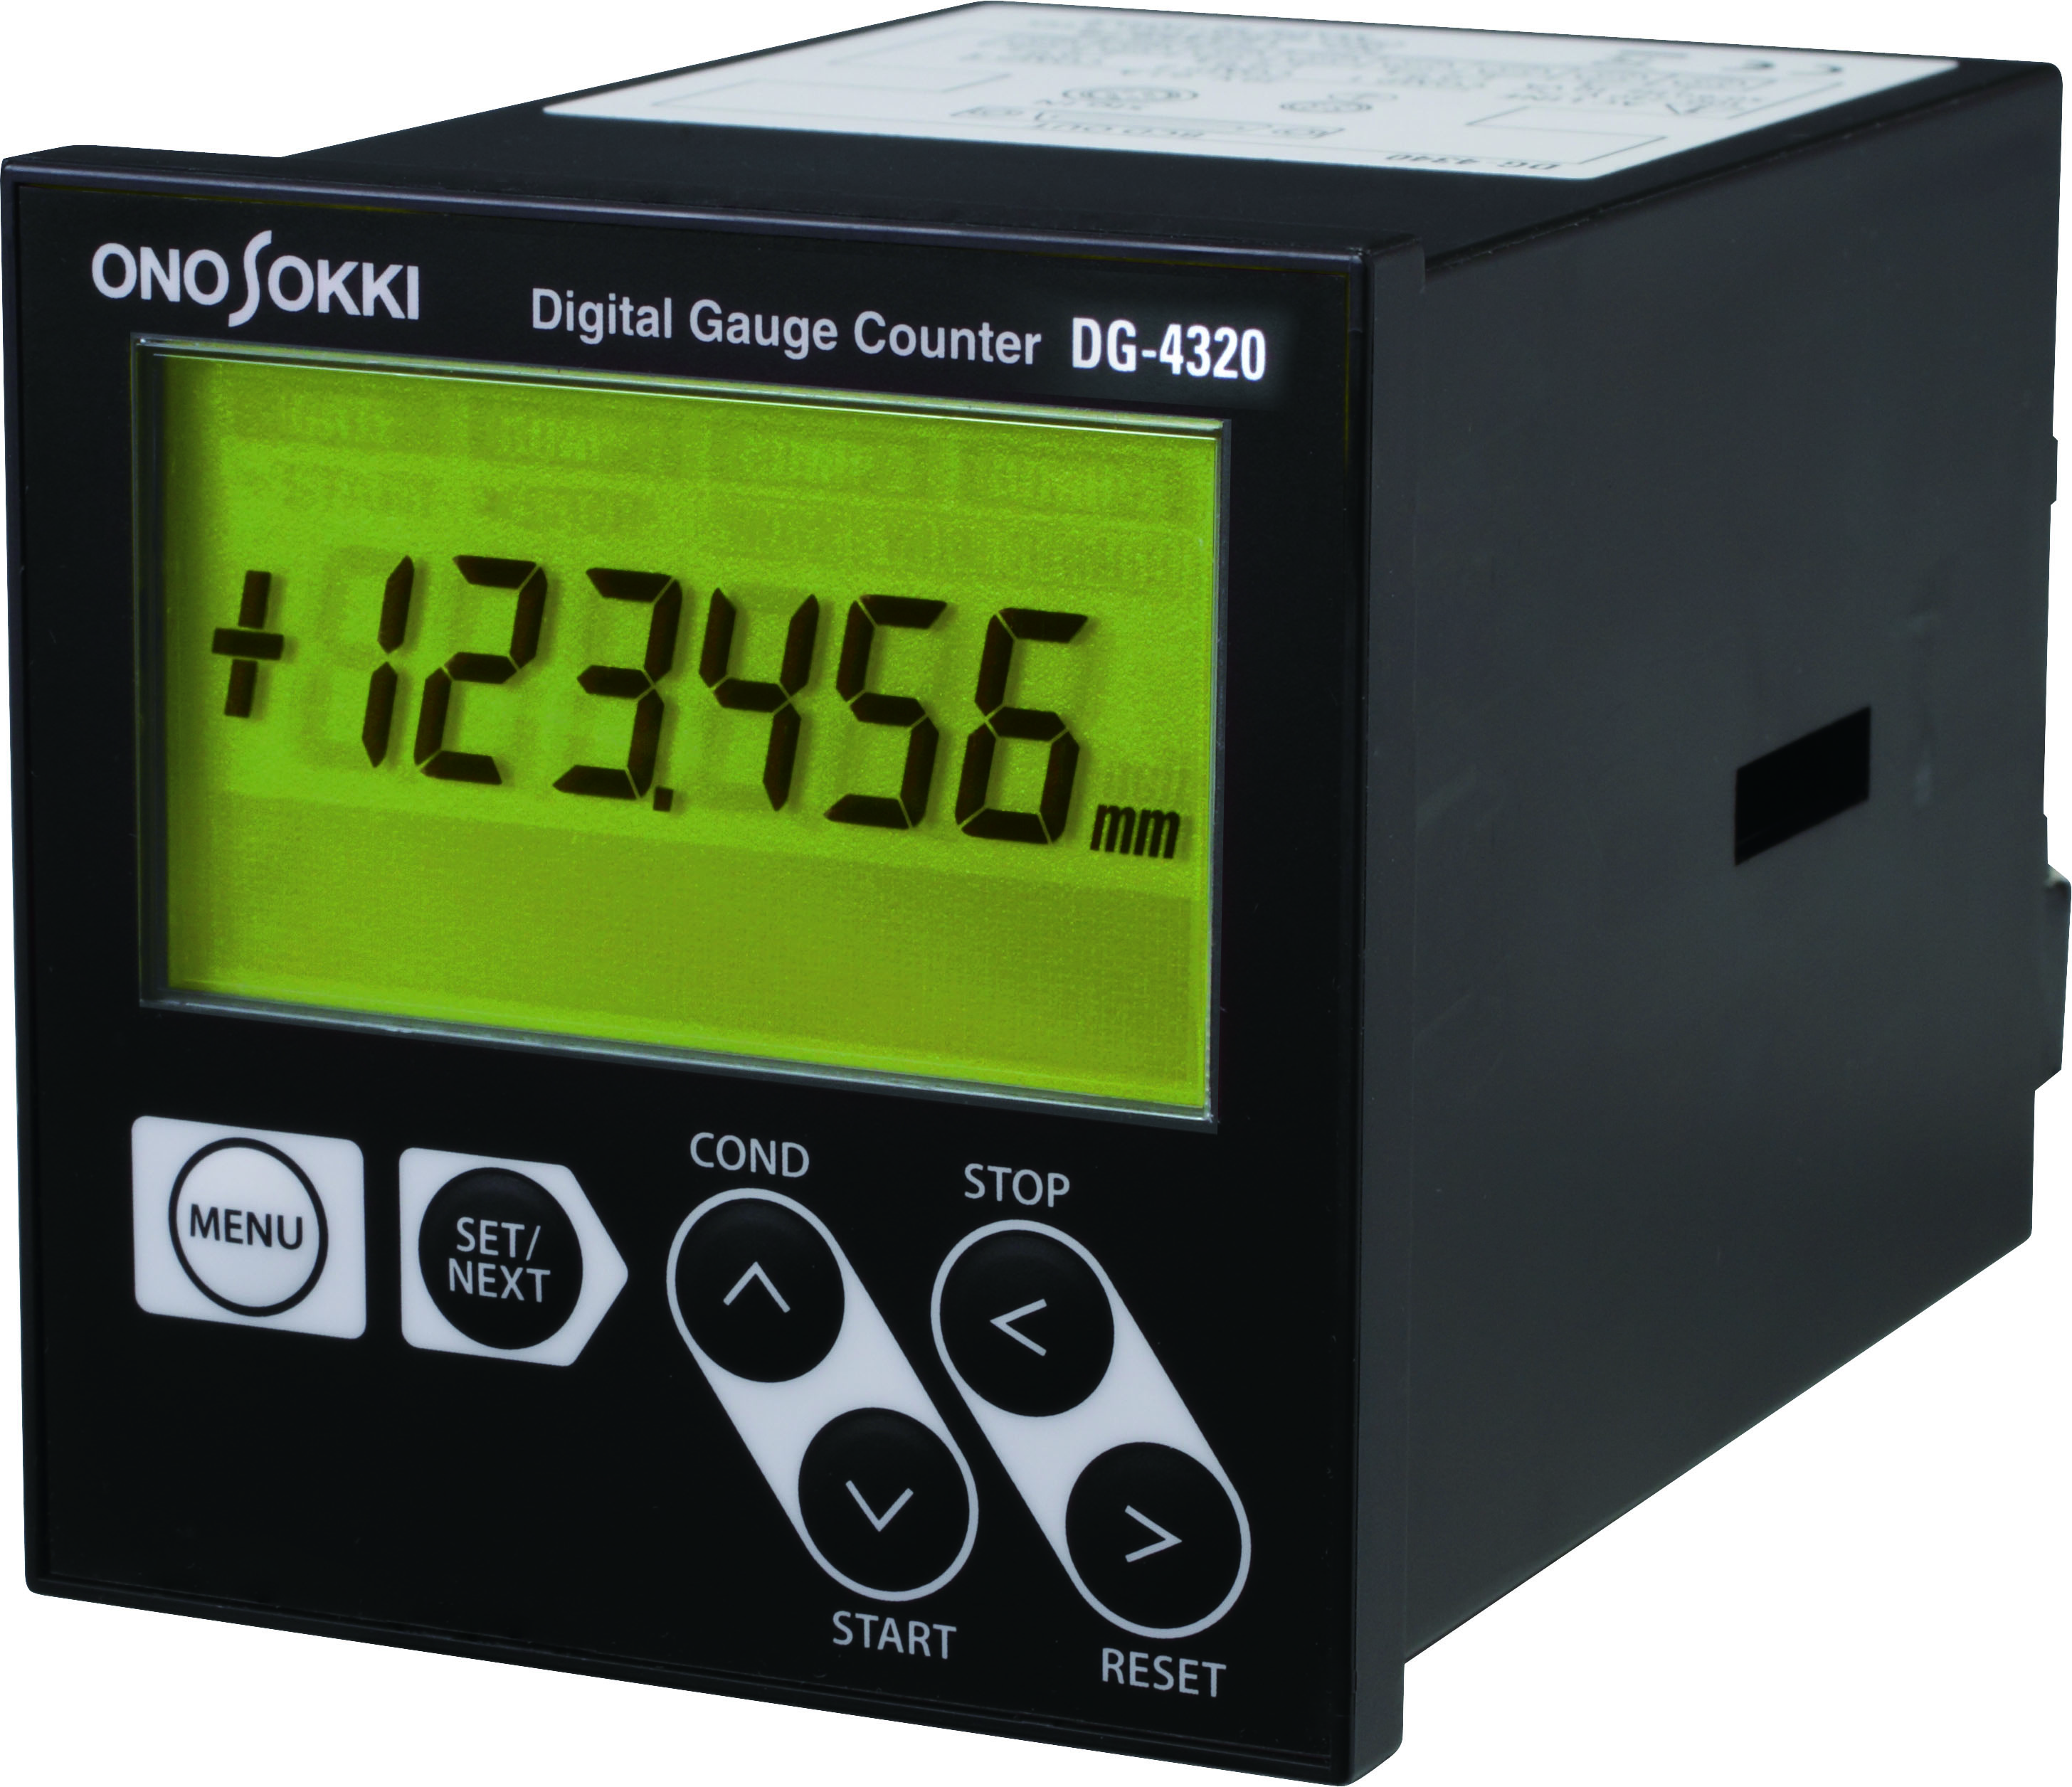 小野測器 DG-4320 オープンコレクタBCD型デジタルゲージカウンタ DIY・工具